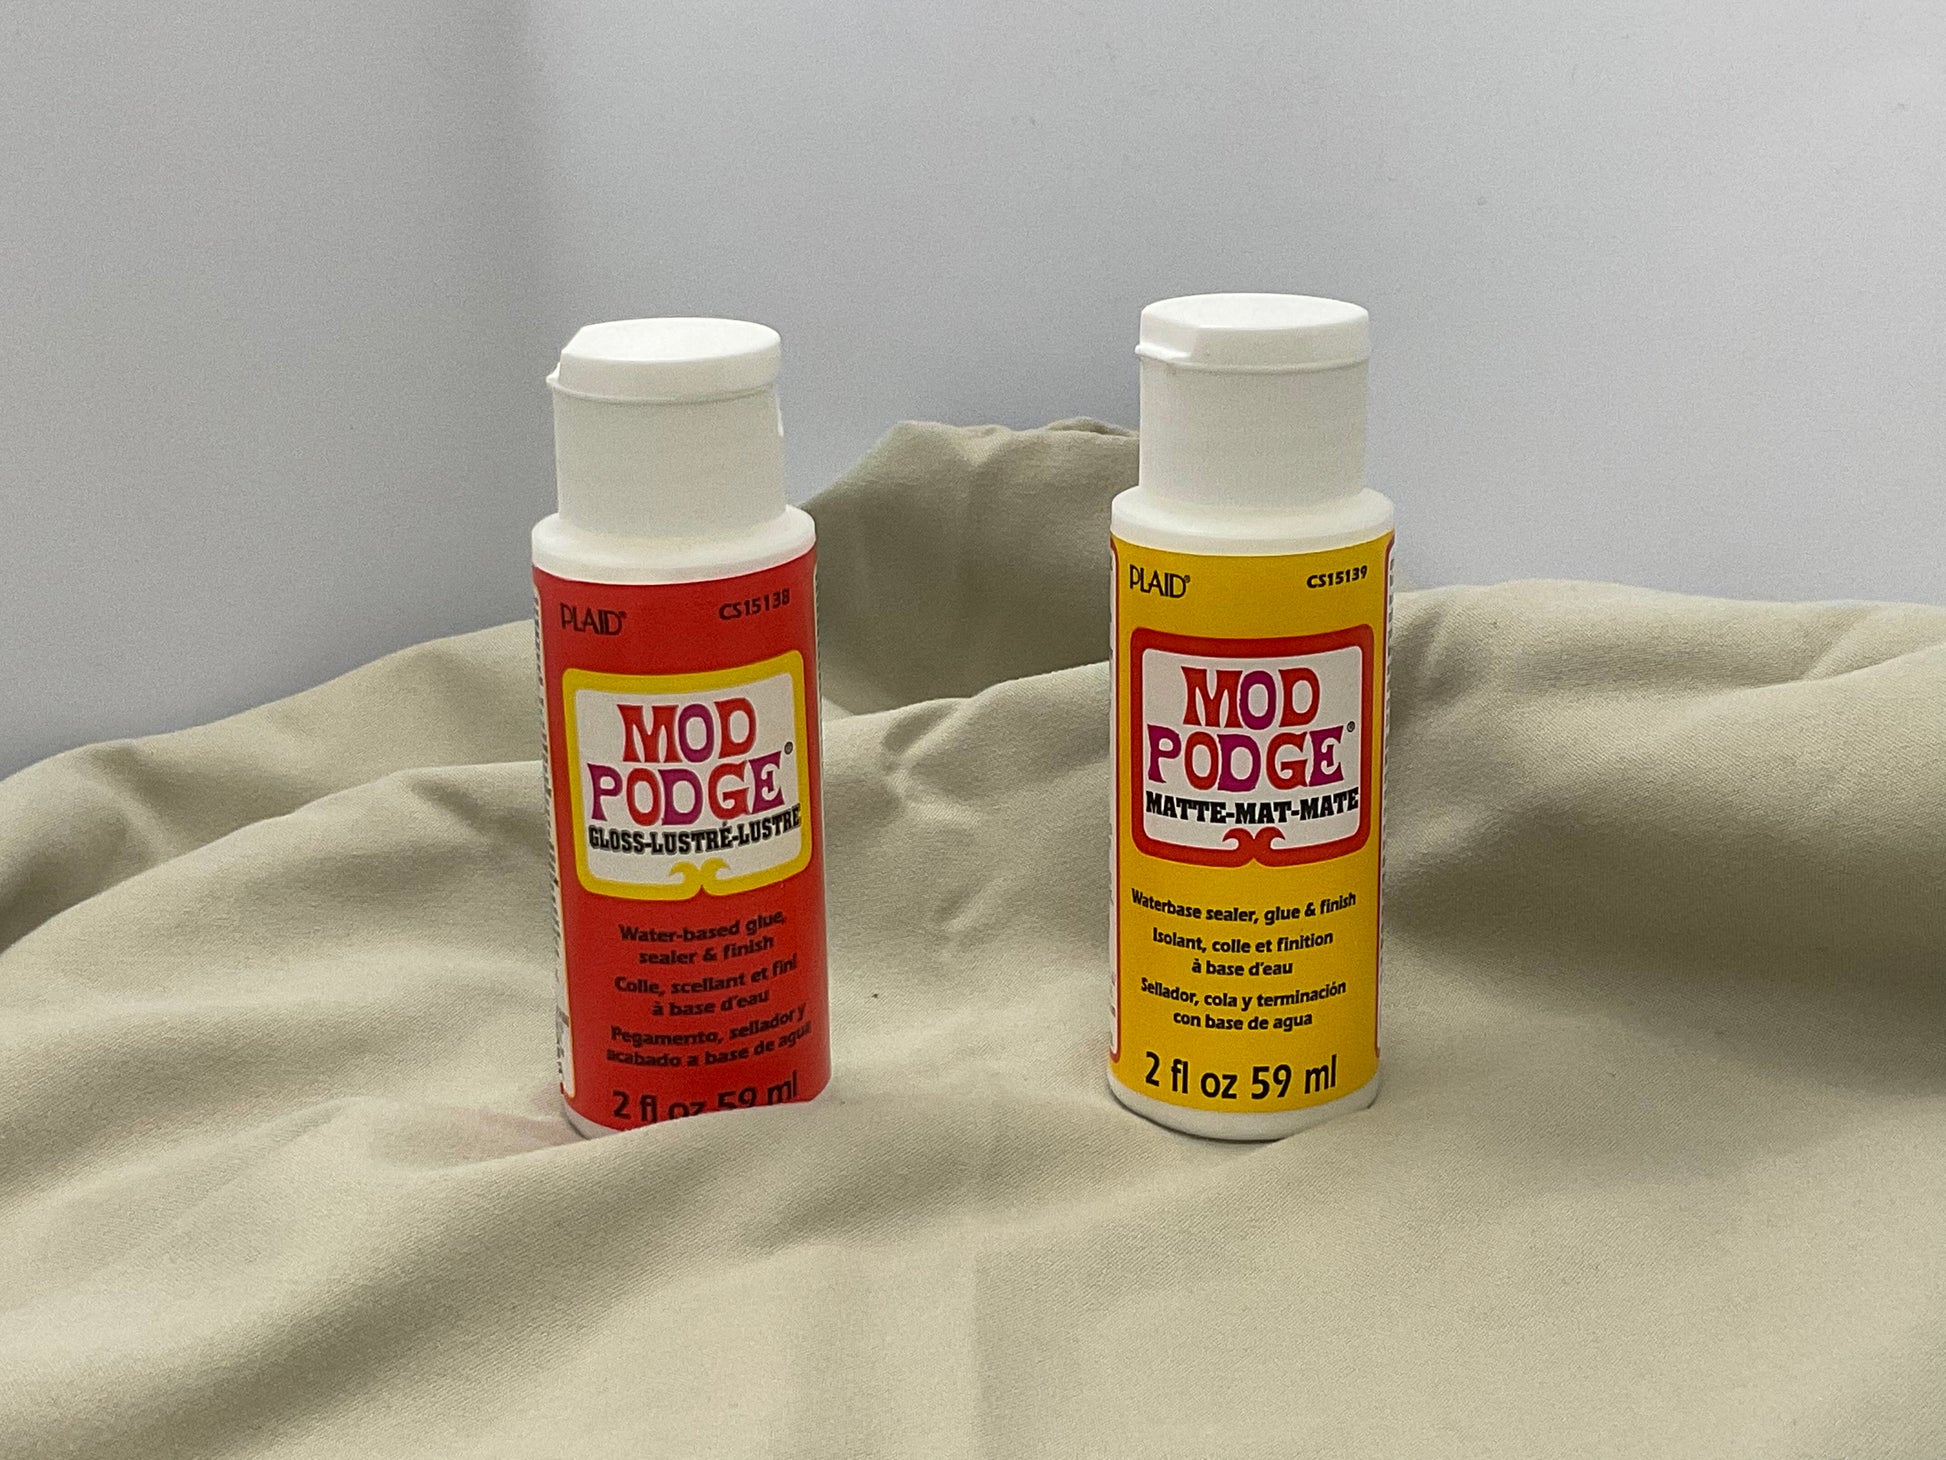 Mod Podge, Acrylic Spray Sealant, Non-Toxic, Gloss finish